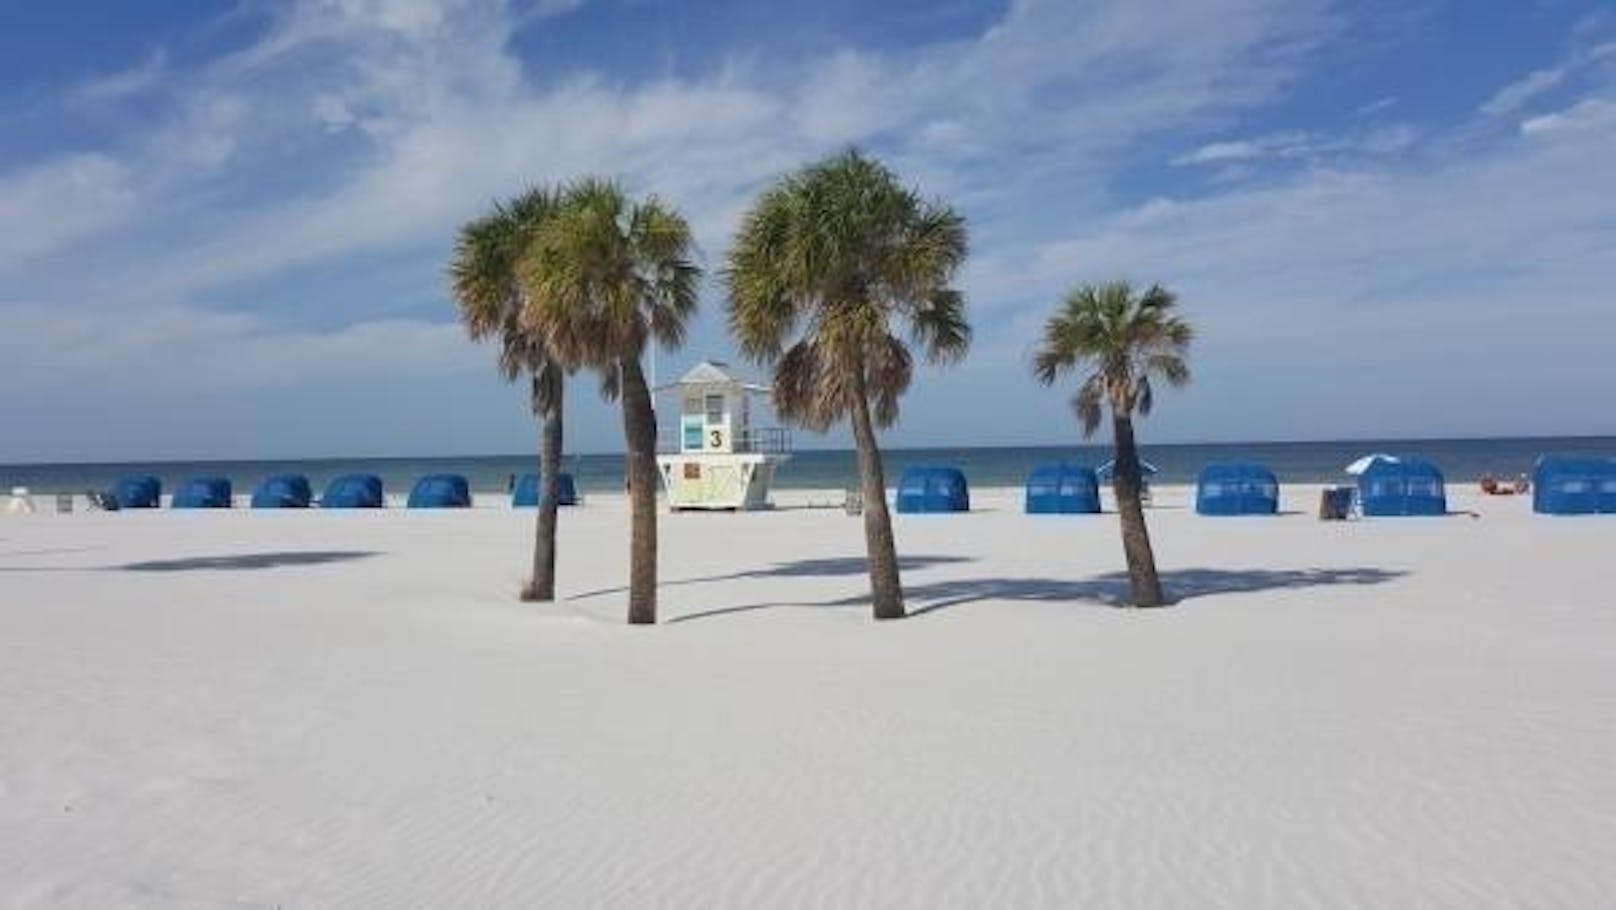 <b>Platz sieben: Clearwater Beach, Florida, USA: </b>Bekannt als einer der schönsten Strände in Florida, ist der Clearwater Beach ein idealer Ort für Strandtage mit der Familie oder romantische Sonnenuntergänge zu zweit. "Der Strand ist gepflegt und besteht aus sehr feinem weißem Sand. Es gibt viele einfache Zugänge. Die Strandbars und Restaurants sind vergleichsweise günstig", lautet ein Kommentar.